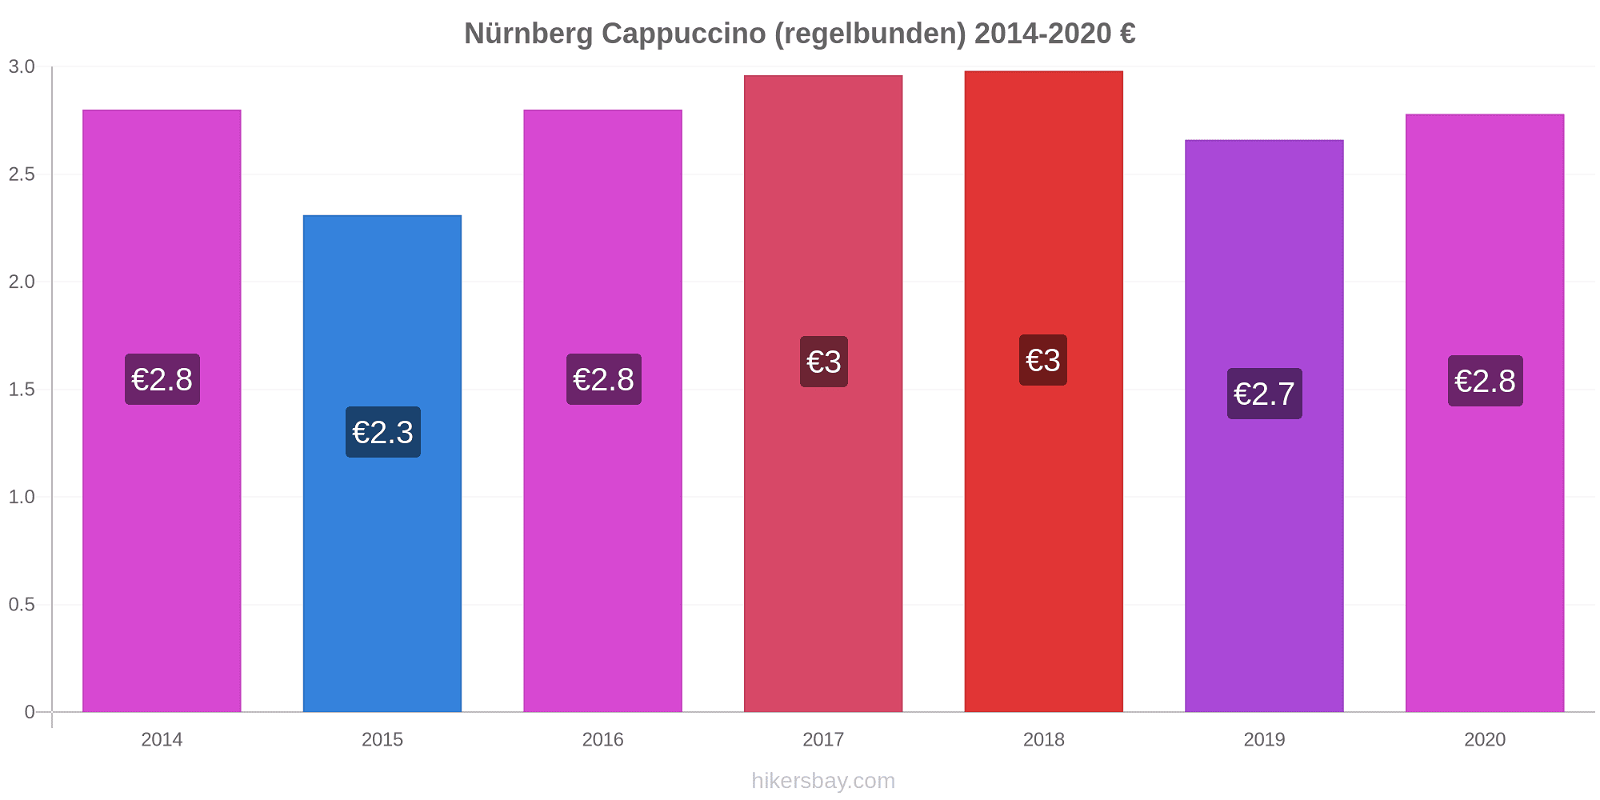 Nürnberg prisförändringar Cappuccino (regelbunden) hikersbay.com